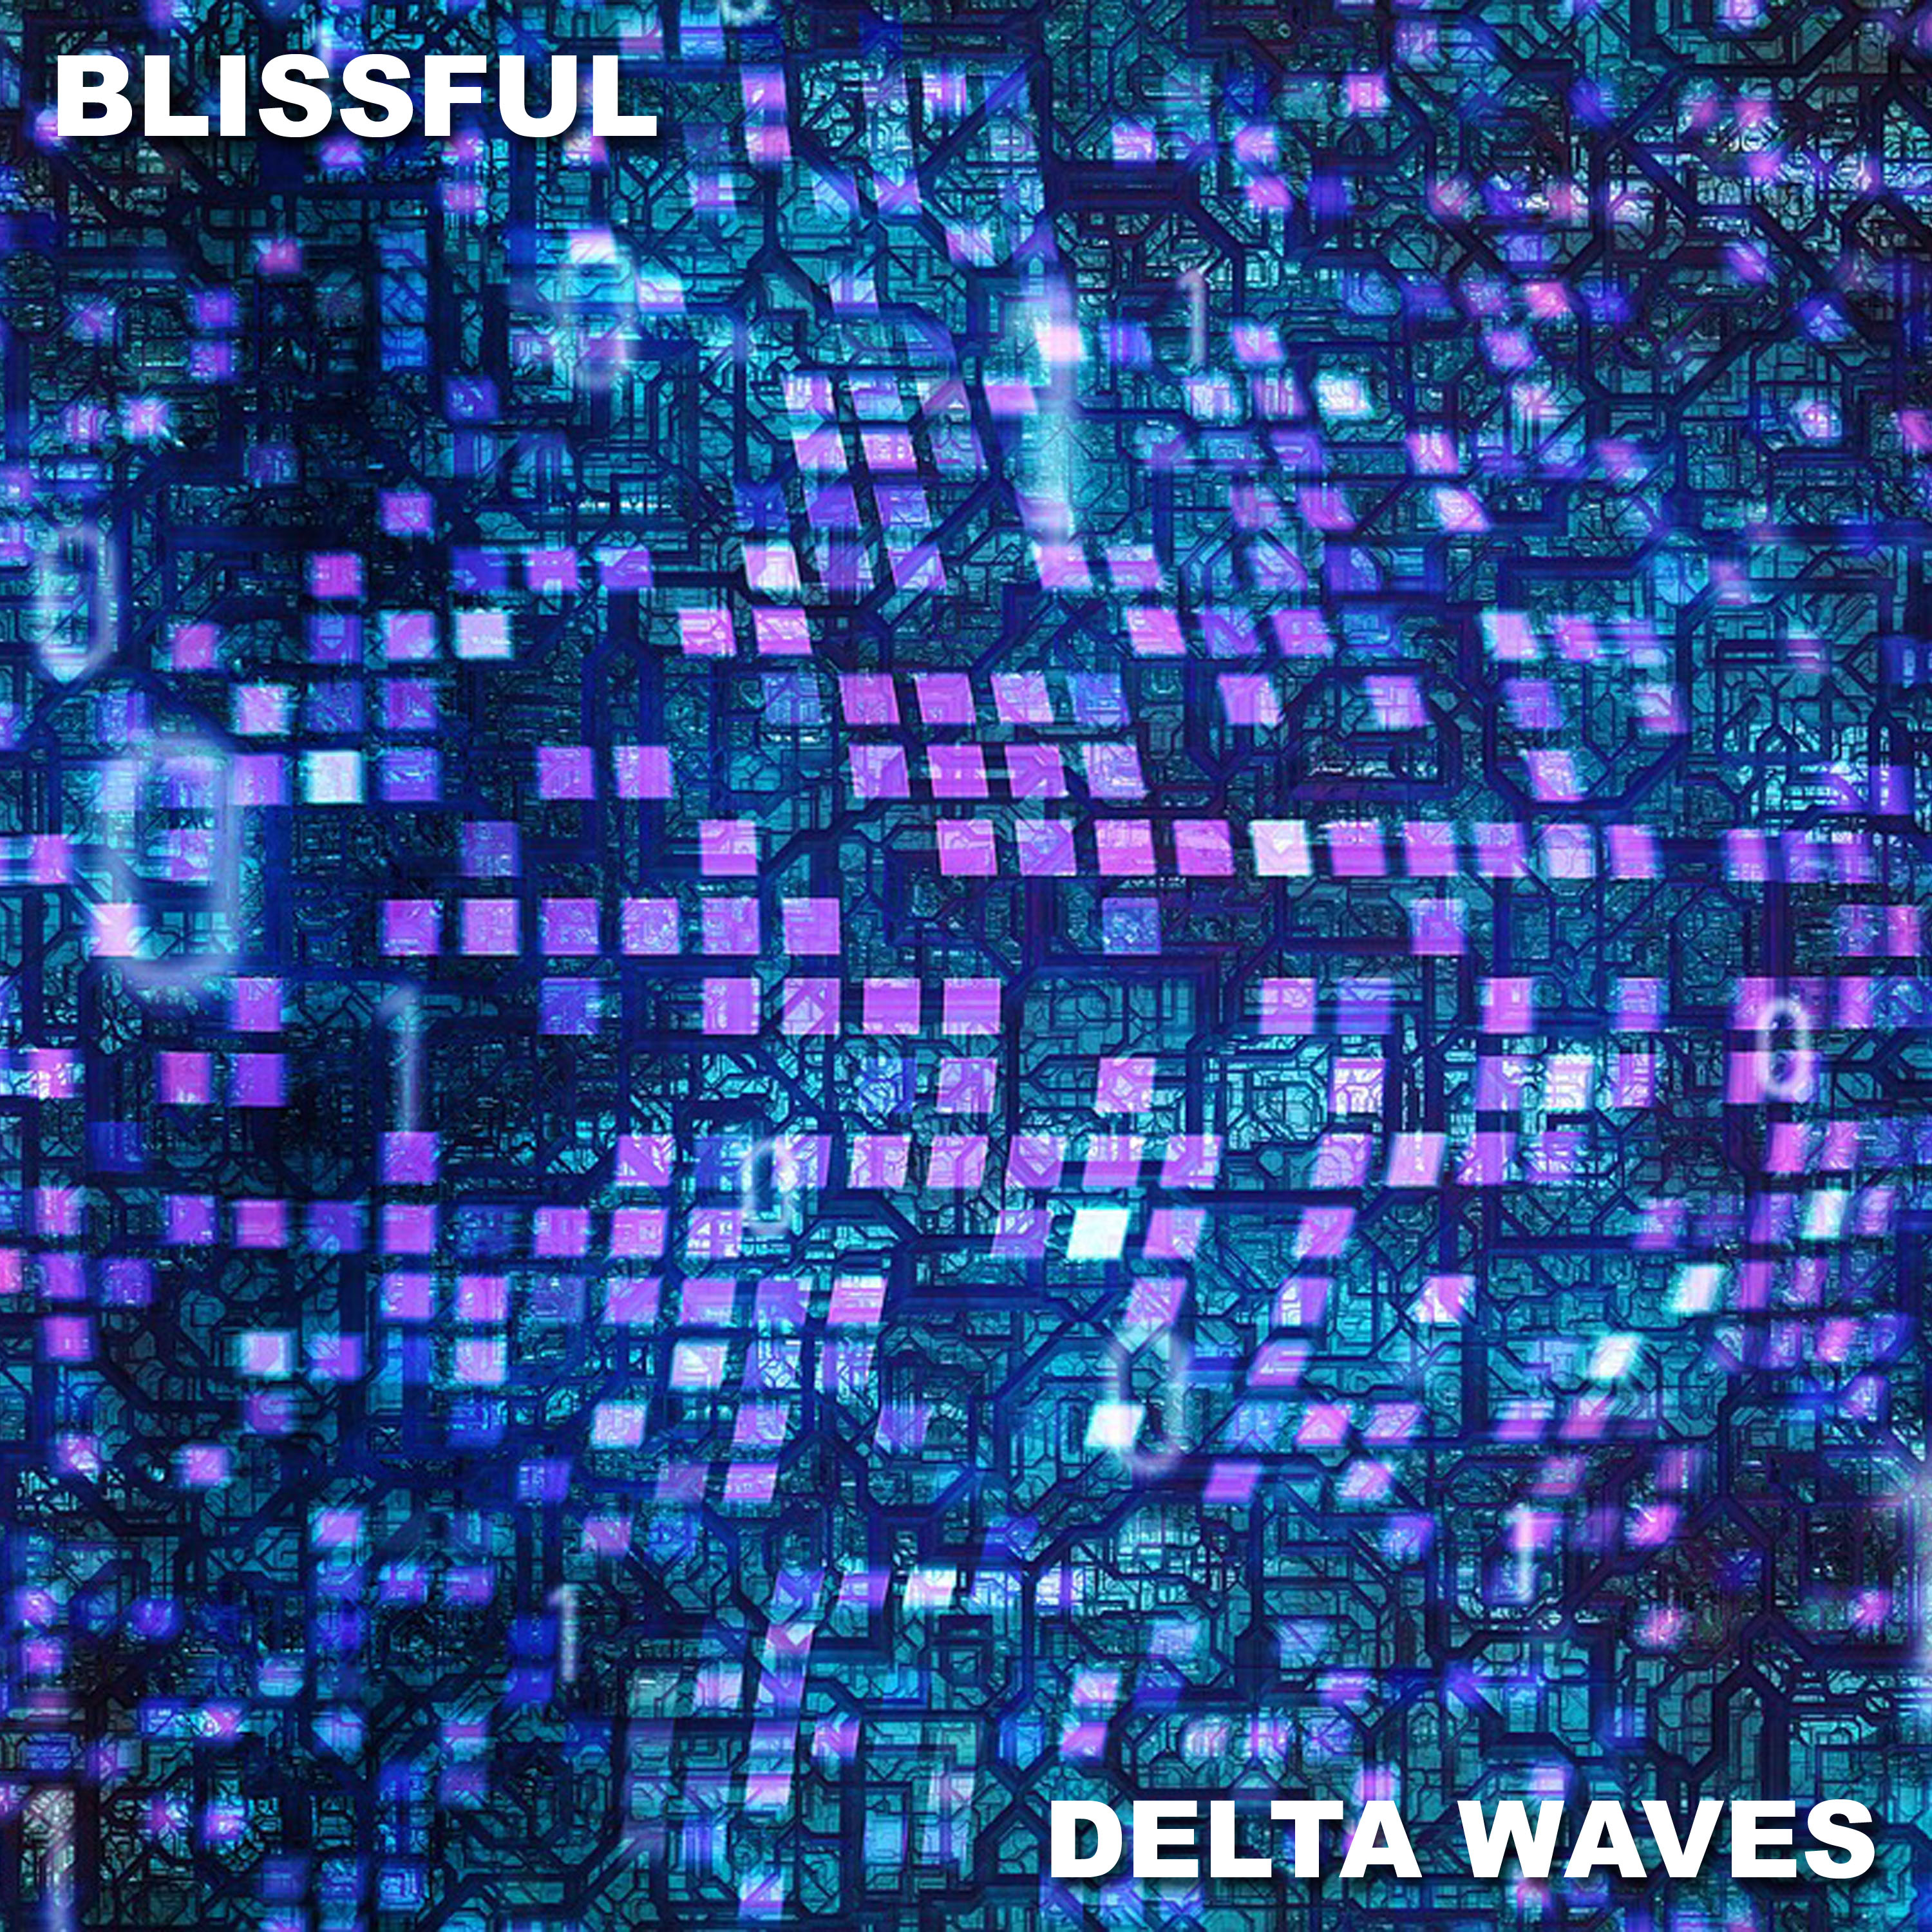 #2019 Blissful Delta Waves